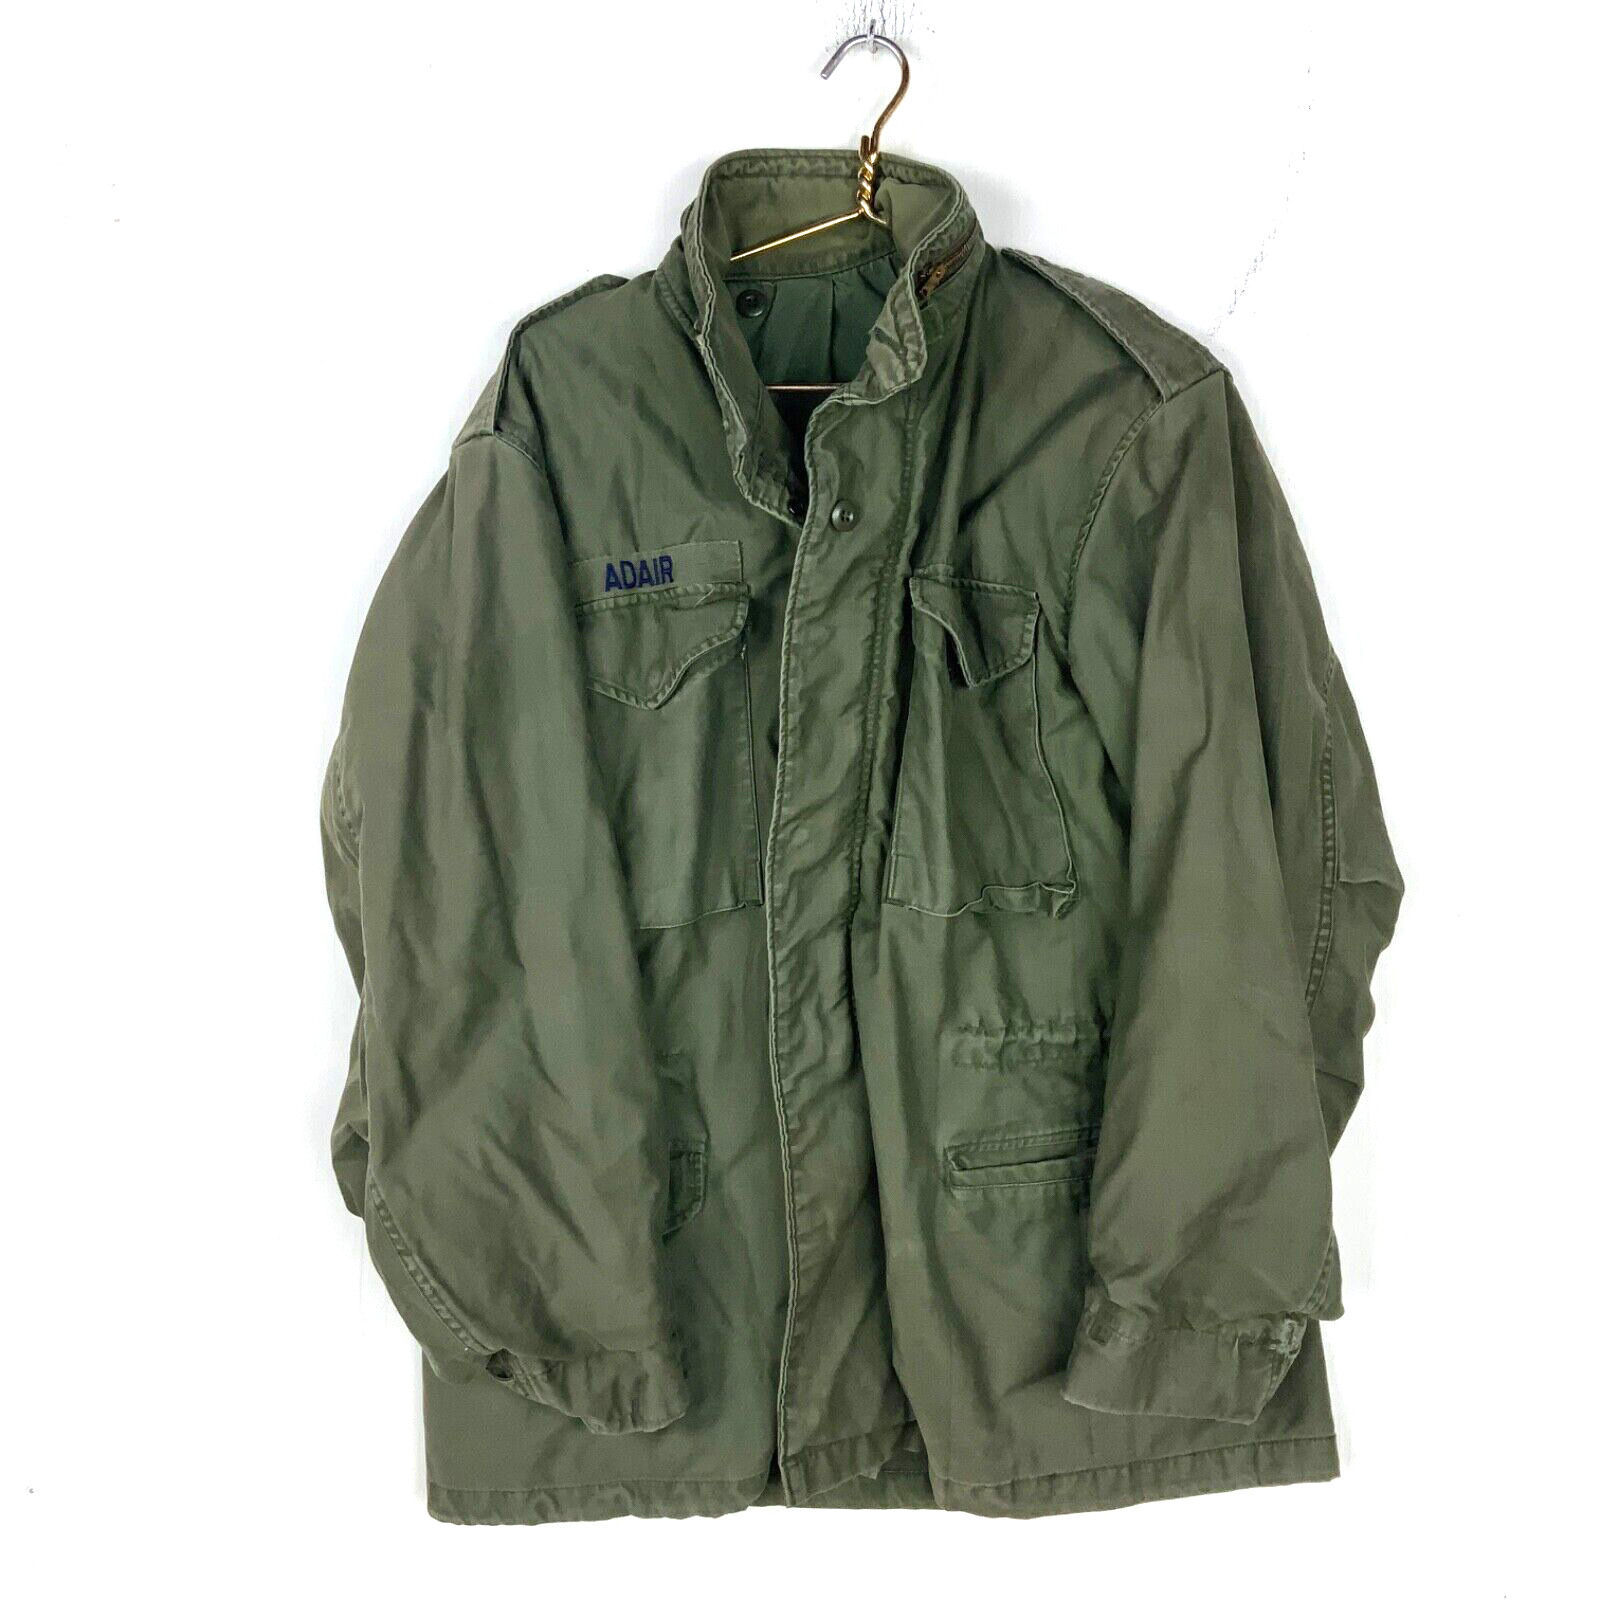 Vintage Us Military OG 107 Cold Weather Jacket Size Large Green 1982